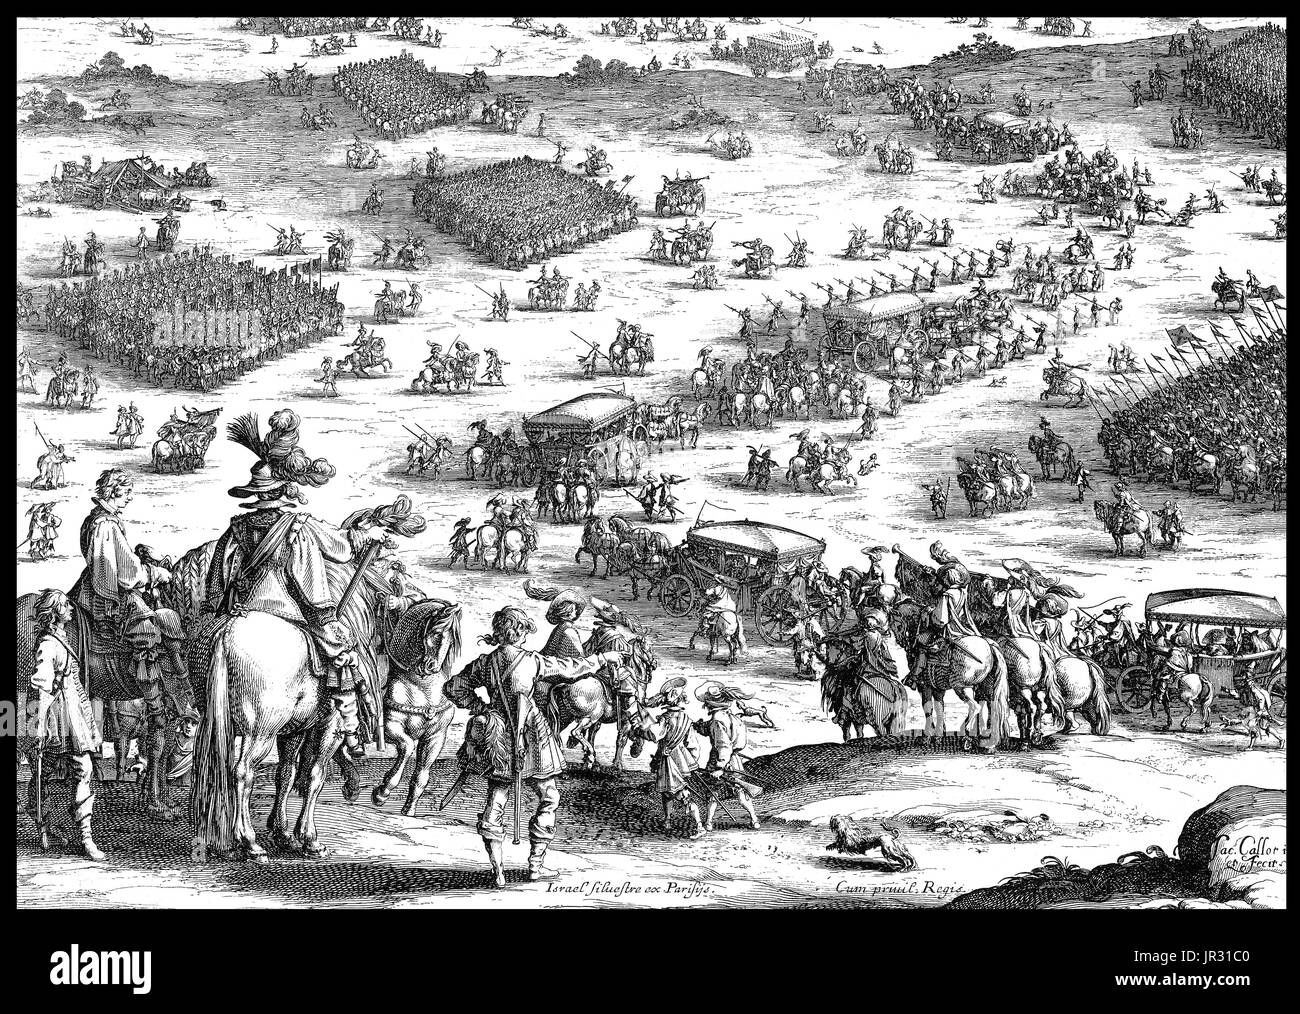 L'Assedio di Breda del 1624-25 si è verificato durante gli ottanta anni di guerra. In seguito gli ordini di Ambrogio Spinola, Filippo IV dell'esercito di cui assedio a Breda nel mese di agosto 1624. Strategicamente situato a città fu pesantemente fortificato e difeso fortemente da una guarnigione di 7.000 uomini, che gli olandesi erano certi avrebbe premuto abbastanza a lungo a logorarsi assedianti. Spinola ha lanciato la sua campagna di Breda, il bloccaggio rapido della città difese e di guida off olandese un esercito di sfiato che aveva tentato di tagliare l'esercito spagnolo di accedere ai materiali di consumo. Nel febbraio 1625, una seconda forza di rilievo, costituito da 7.000 troo inglese Foto Stock